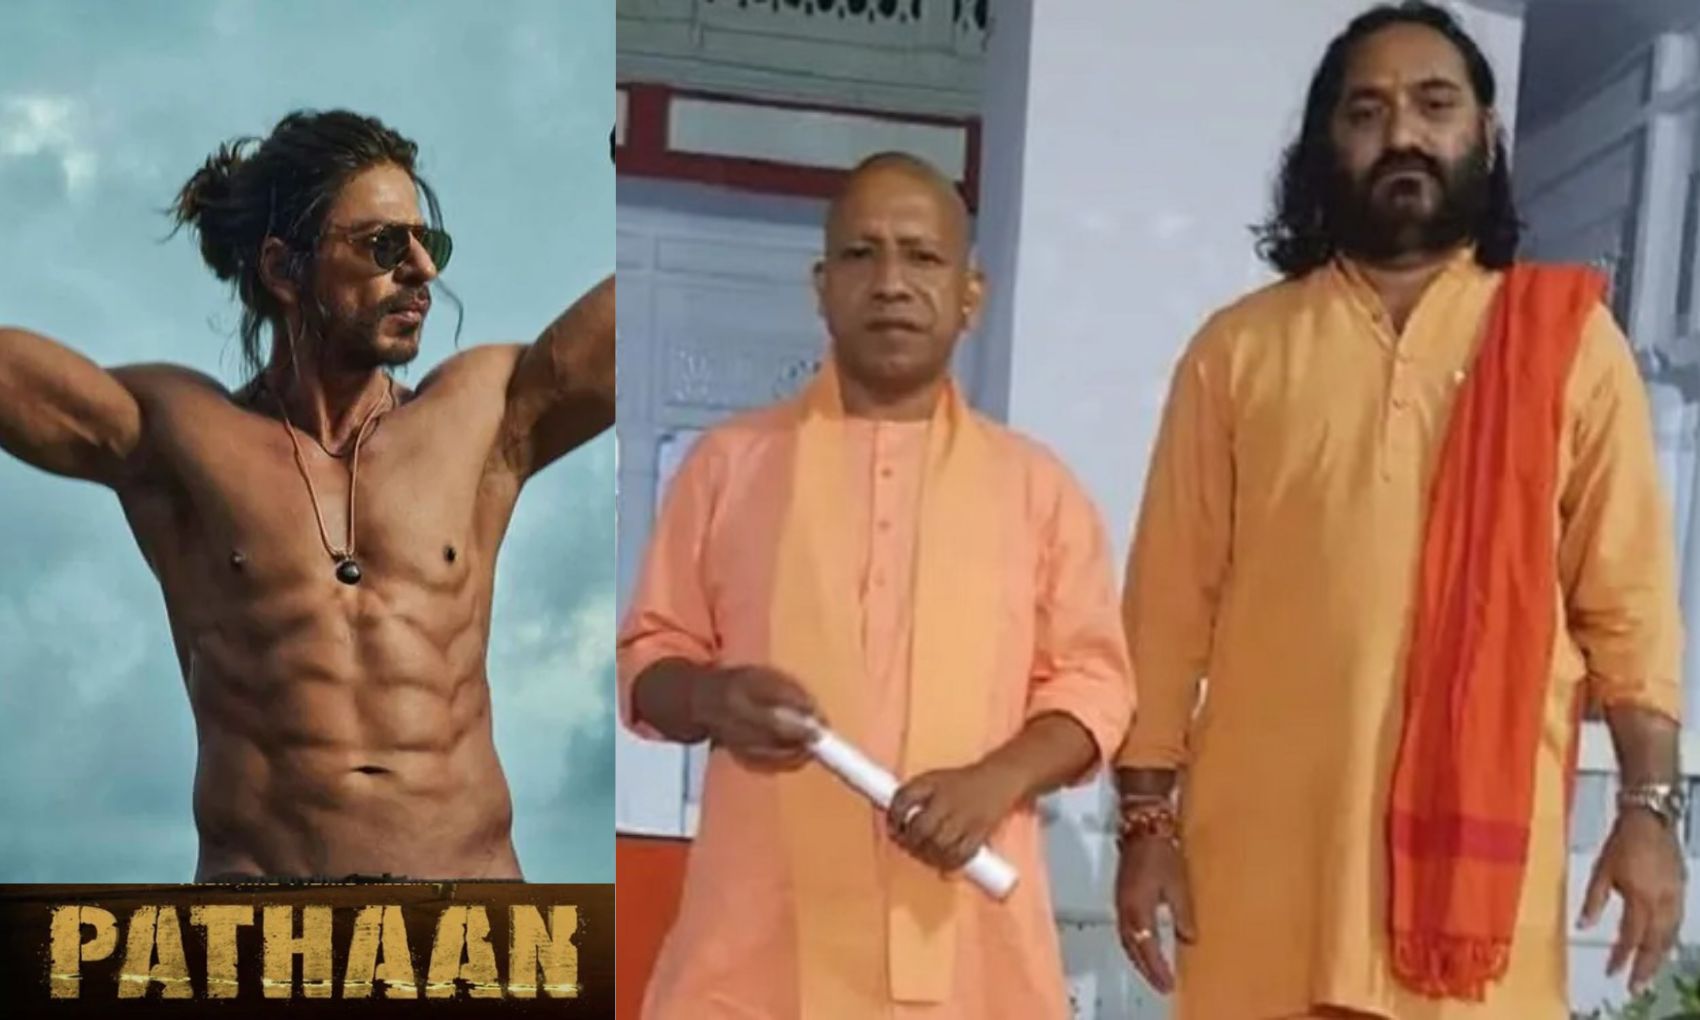 शाहरुख खान की ‘पठान’ को बॉयकॉट करने की बात पर भड़के फैंस, CM योगी आदित्यनाथ के भाई को दी जान से मारने की धमकी